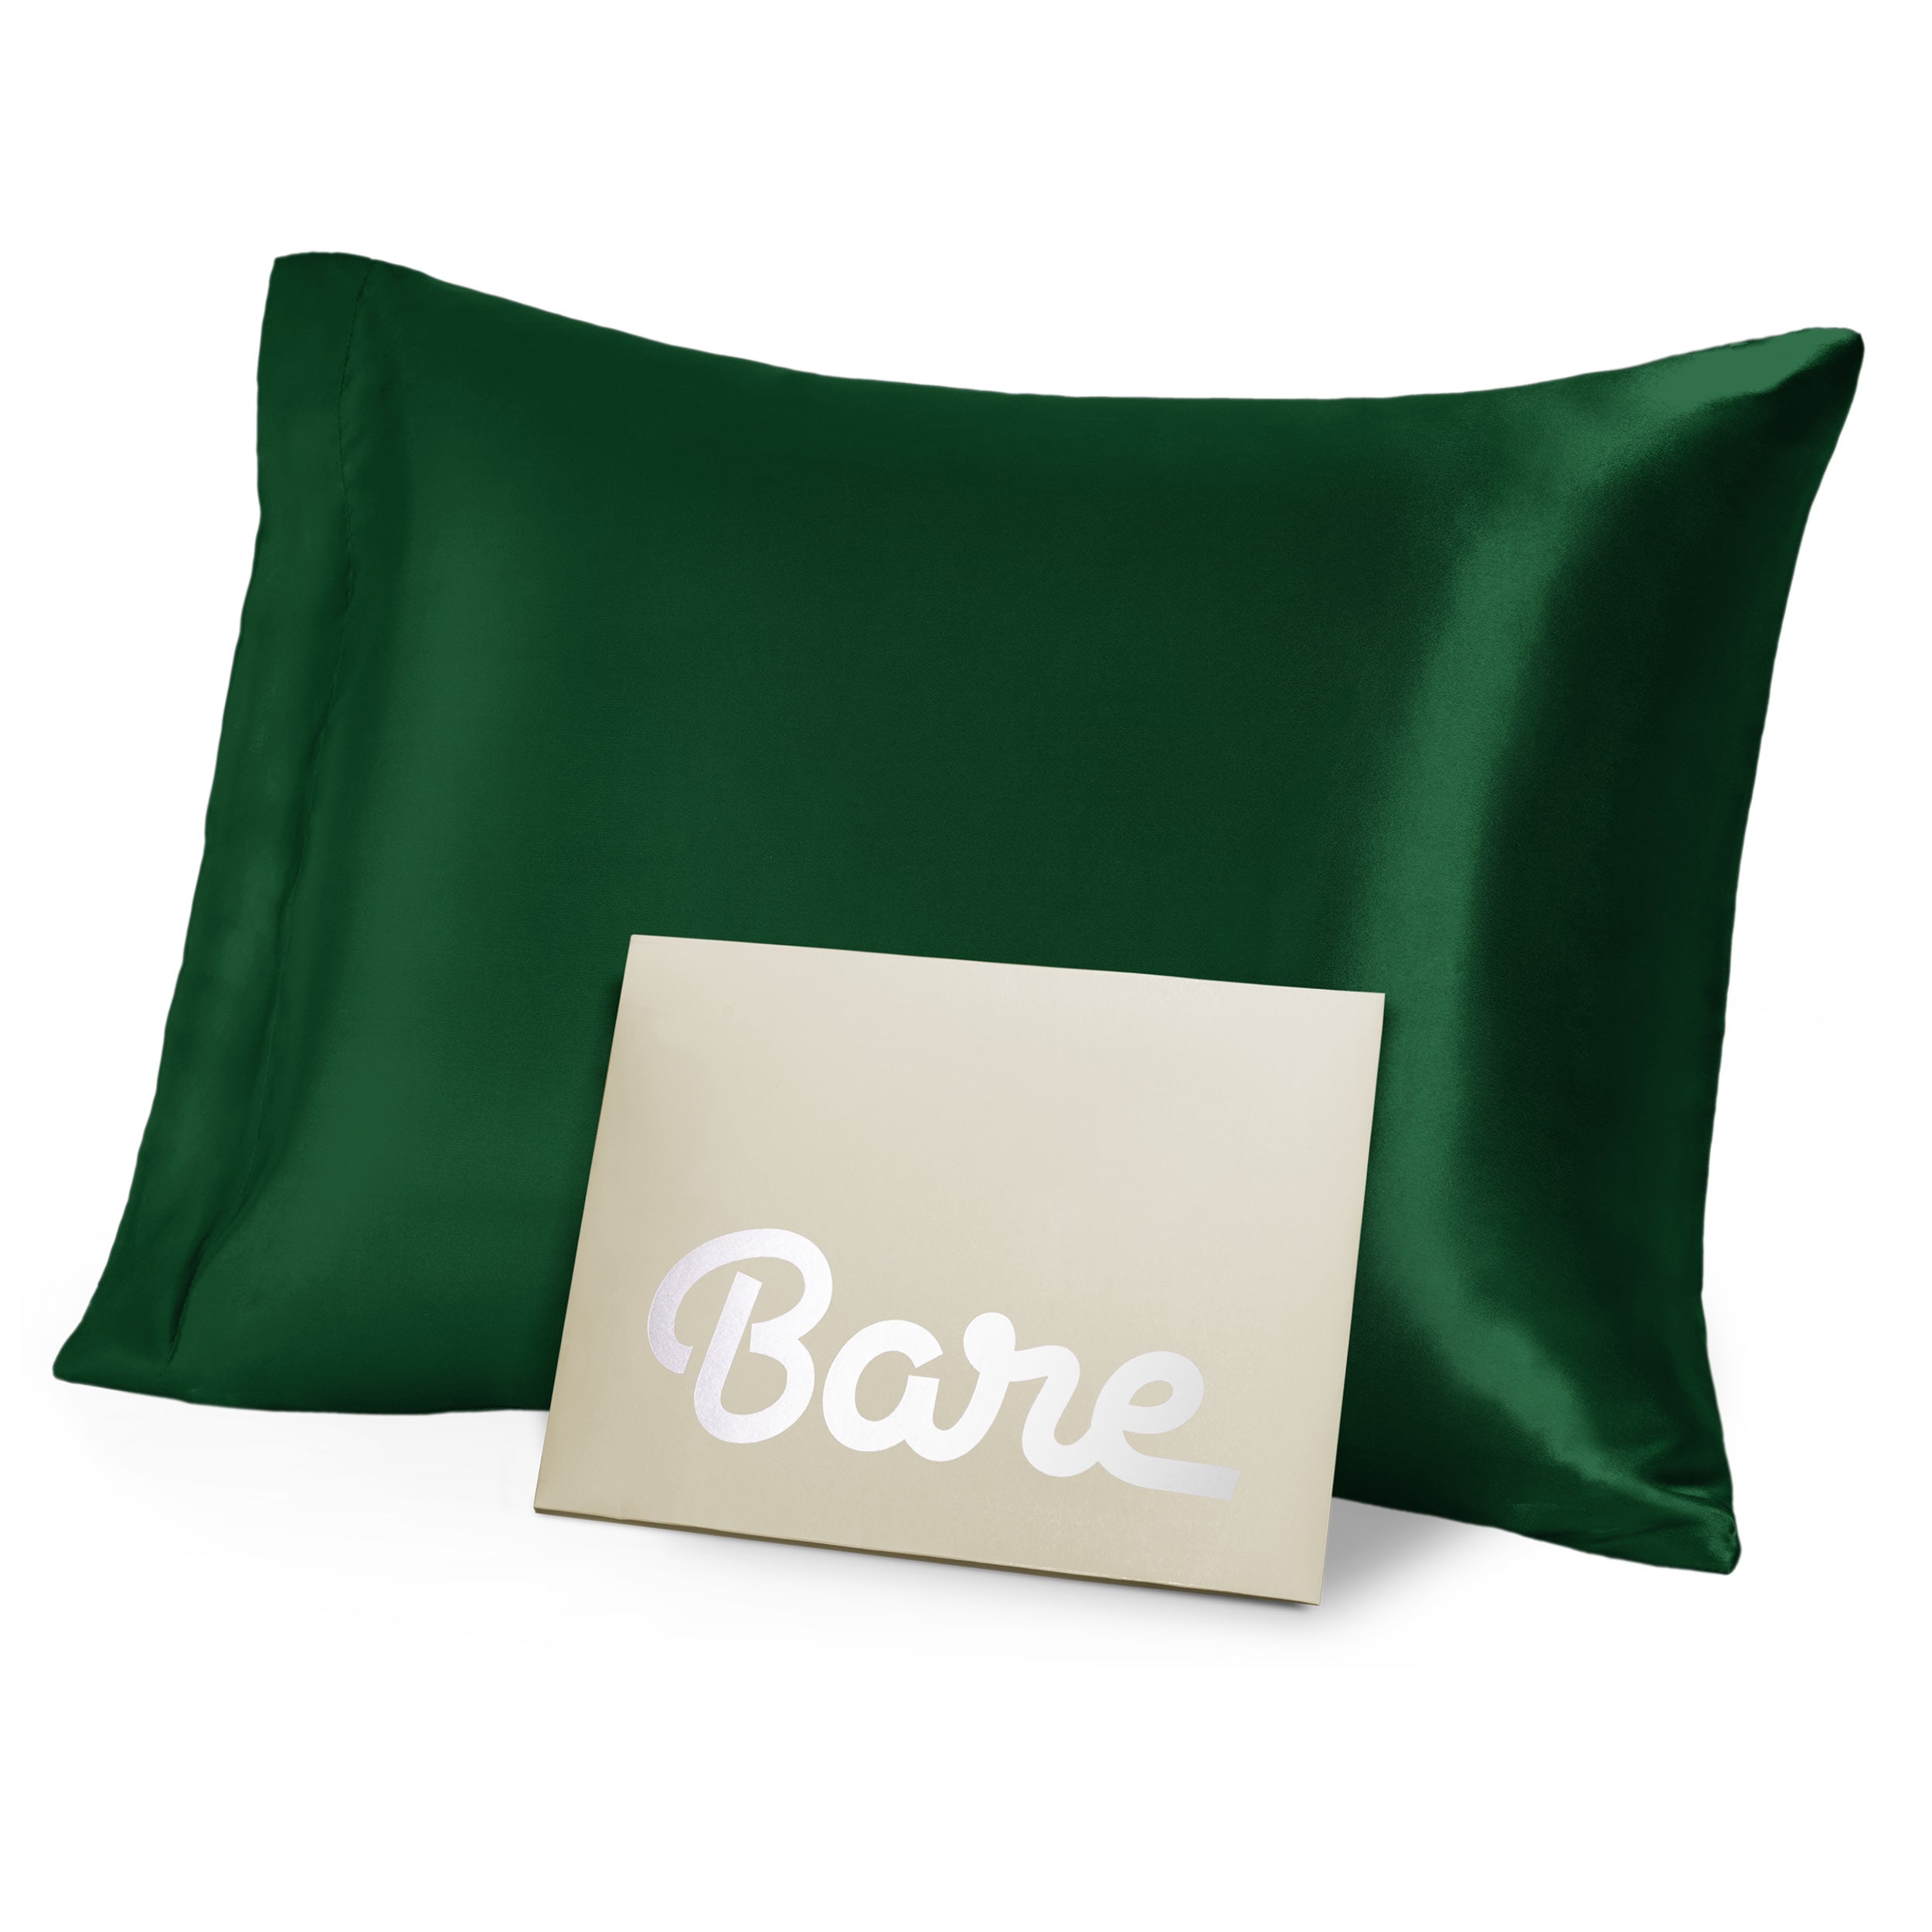 A green mulberry silk pillowcase on a pillow